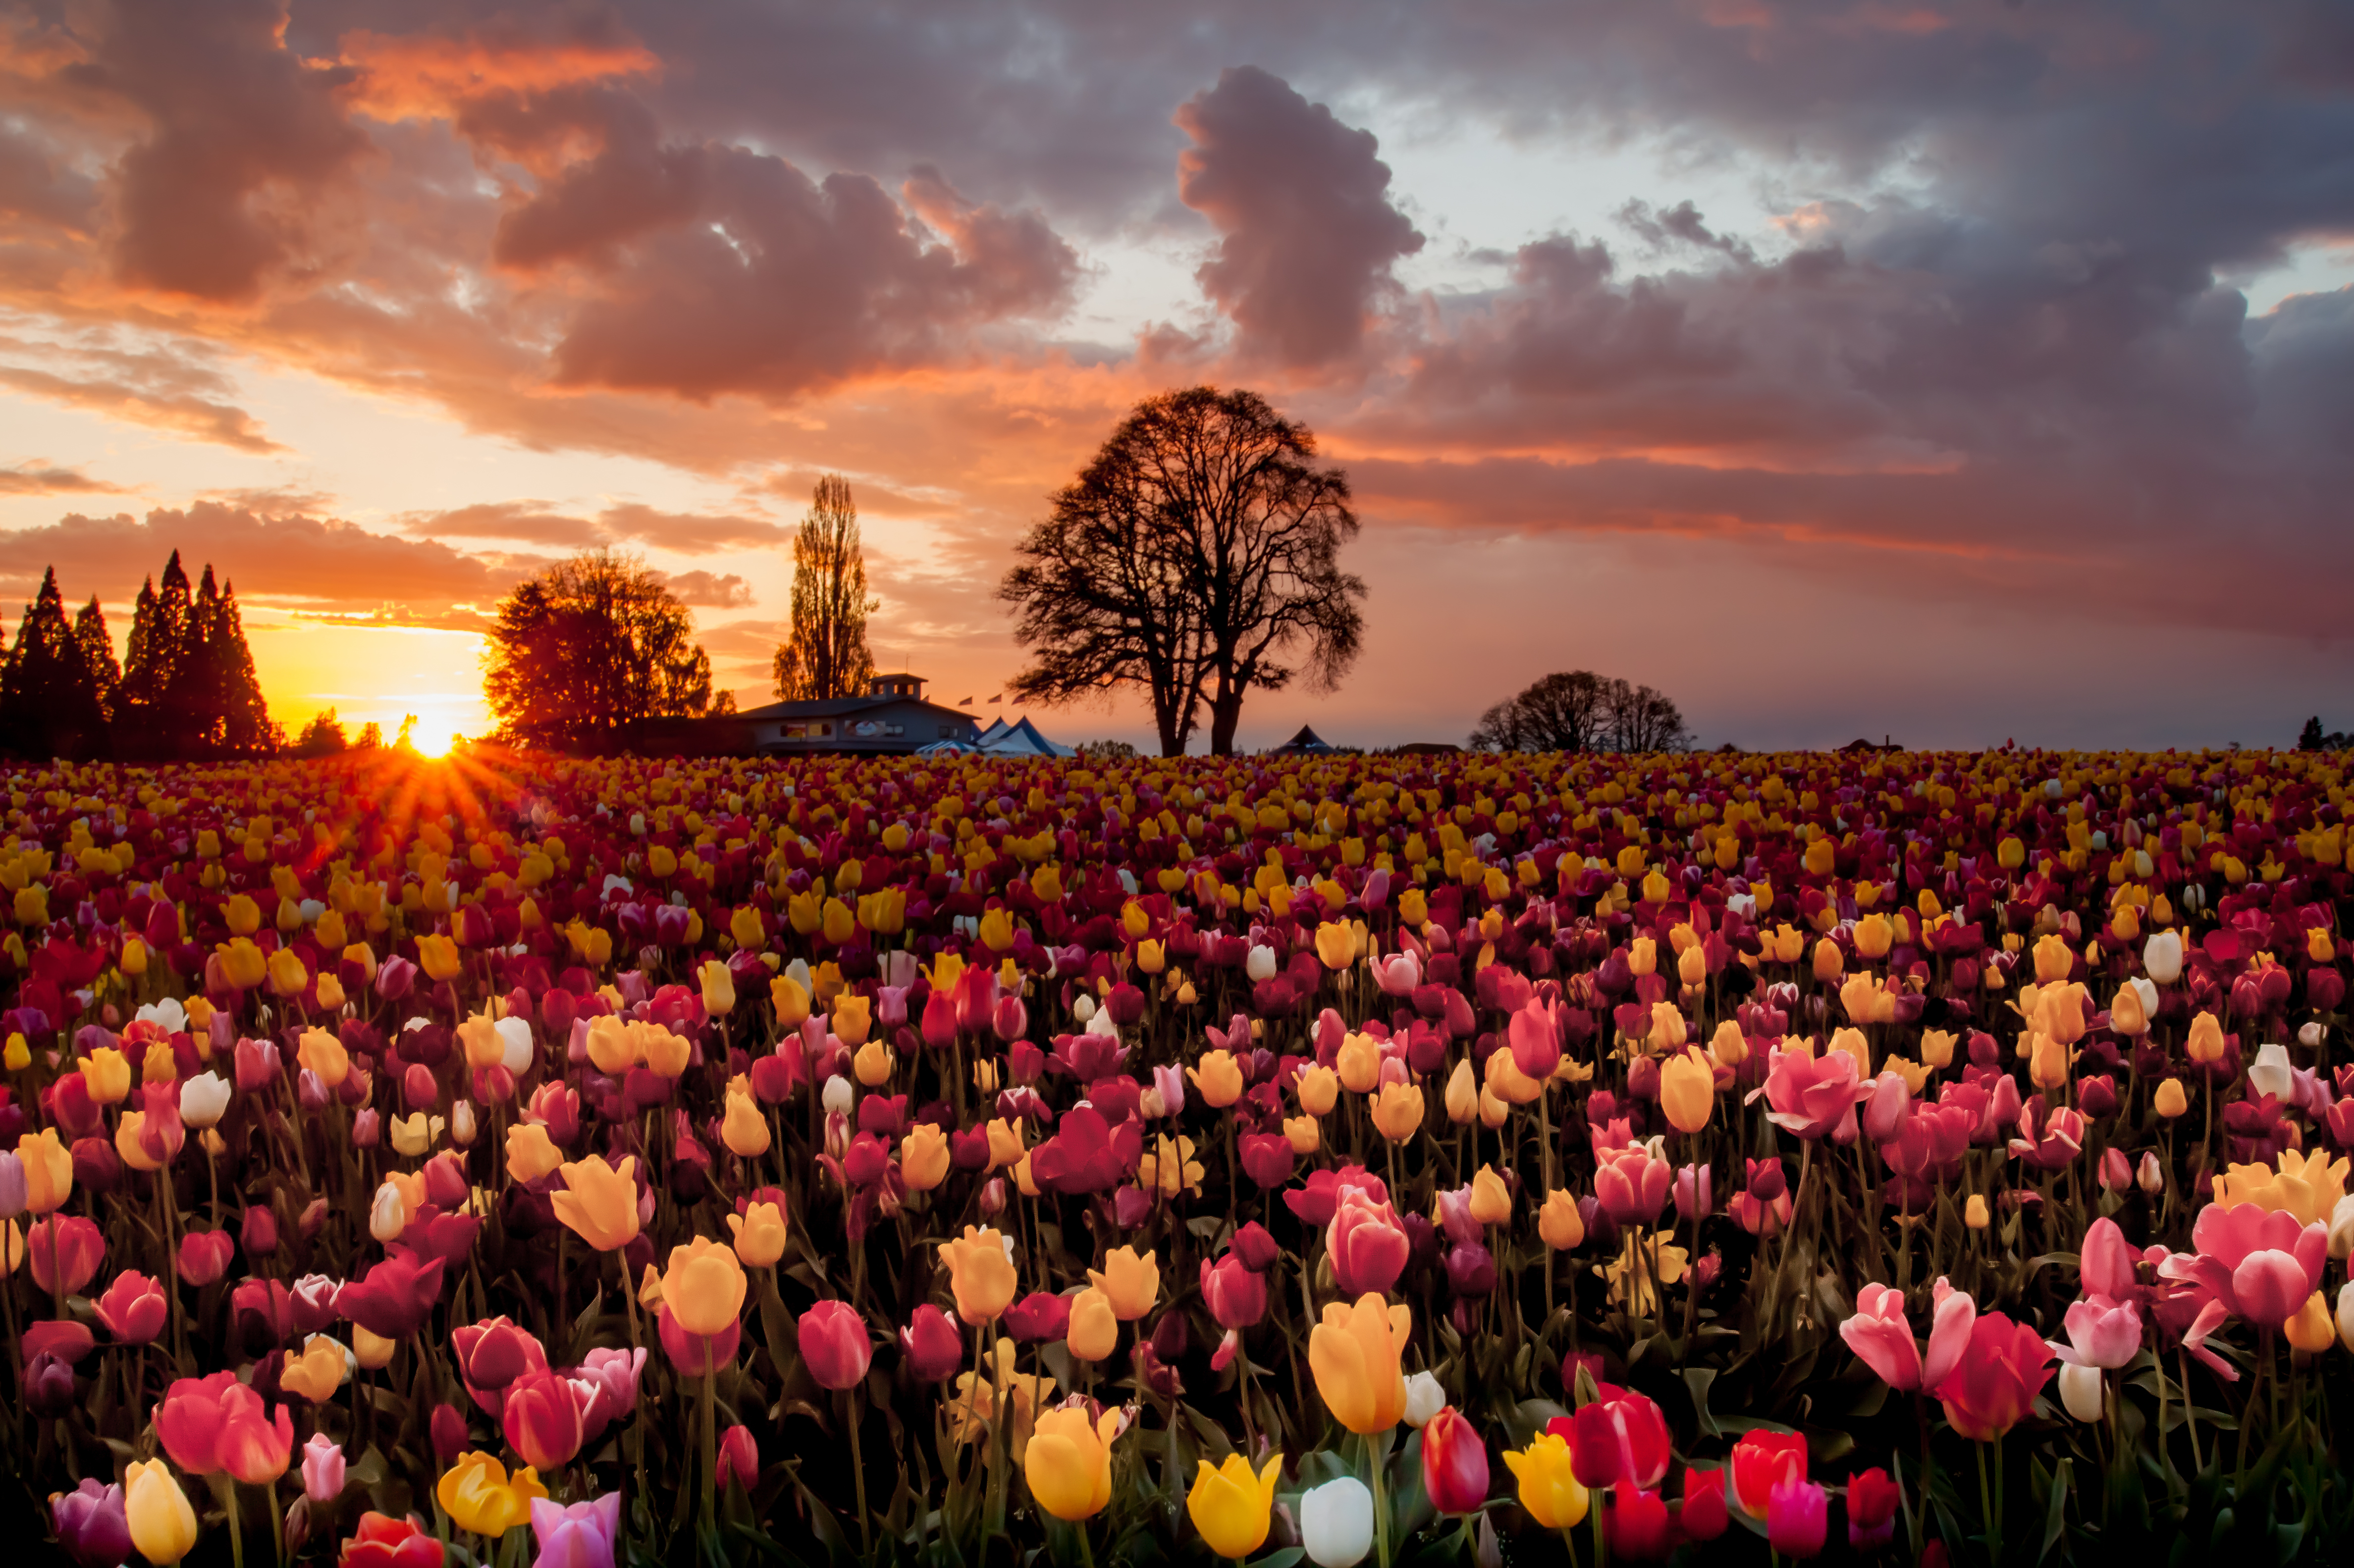 Обои с тюльпанами на телефон. Тюльпановые поля 1920. Красивые цветочные поля. Пейзажи с цветами. Цветы на рассвете.